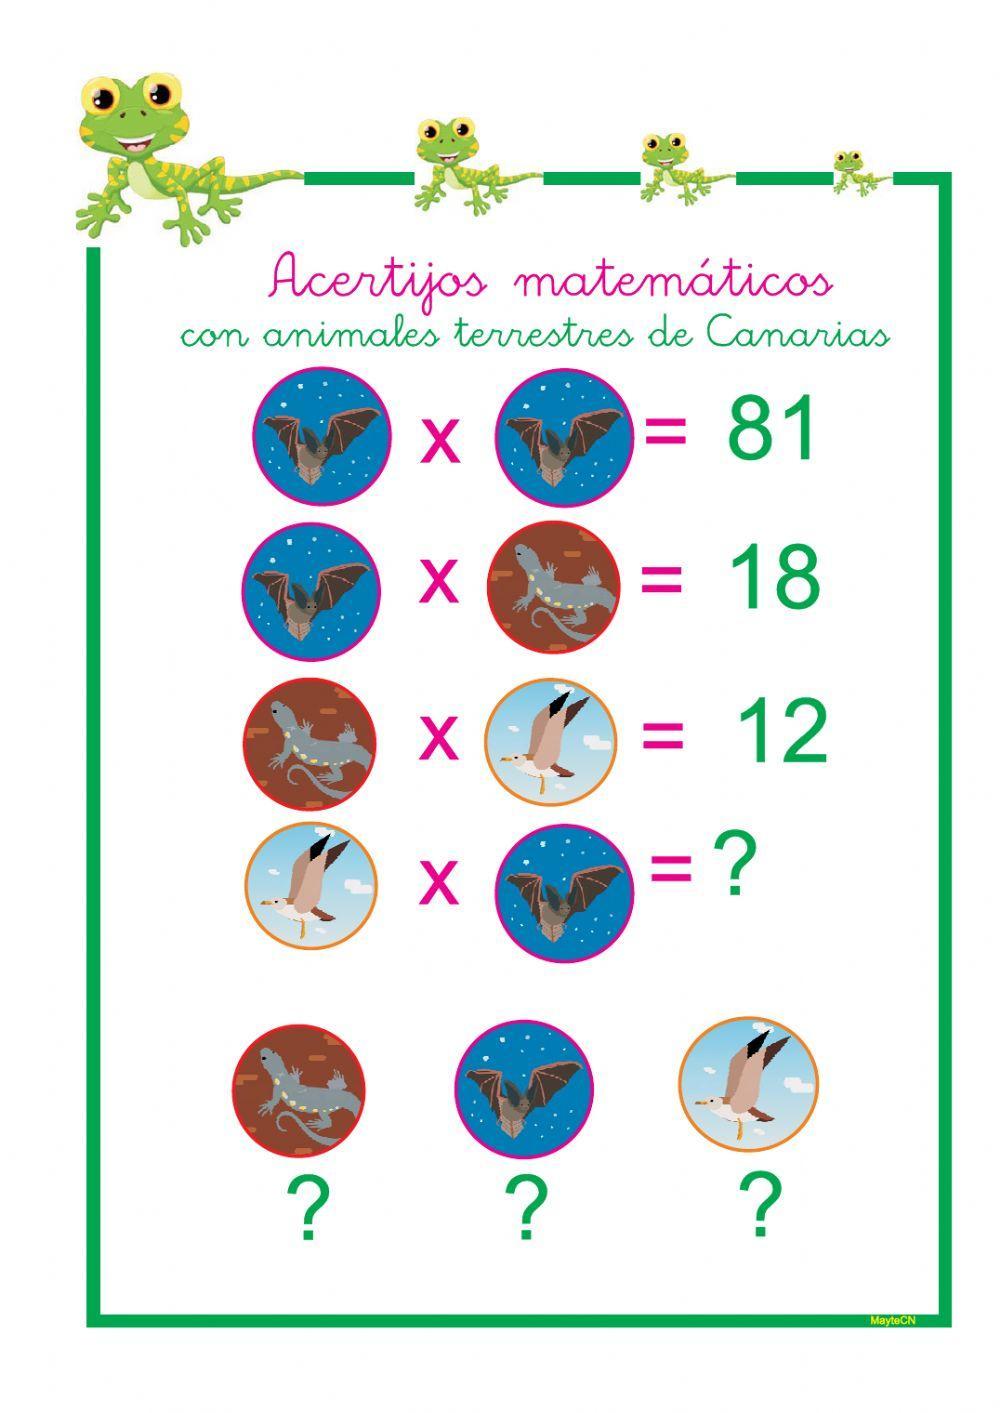 Acertijos matemáticos de Canarias tablas